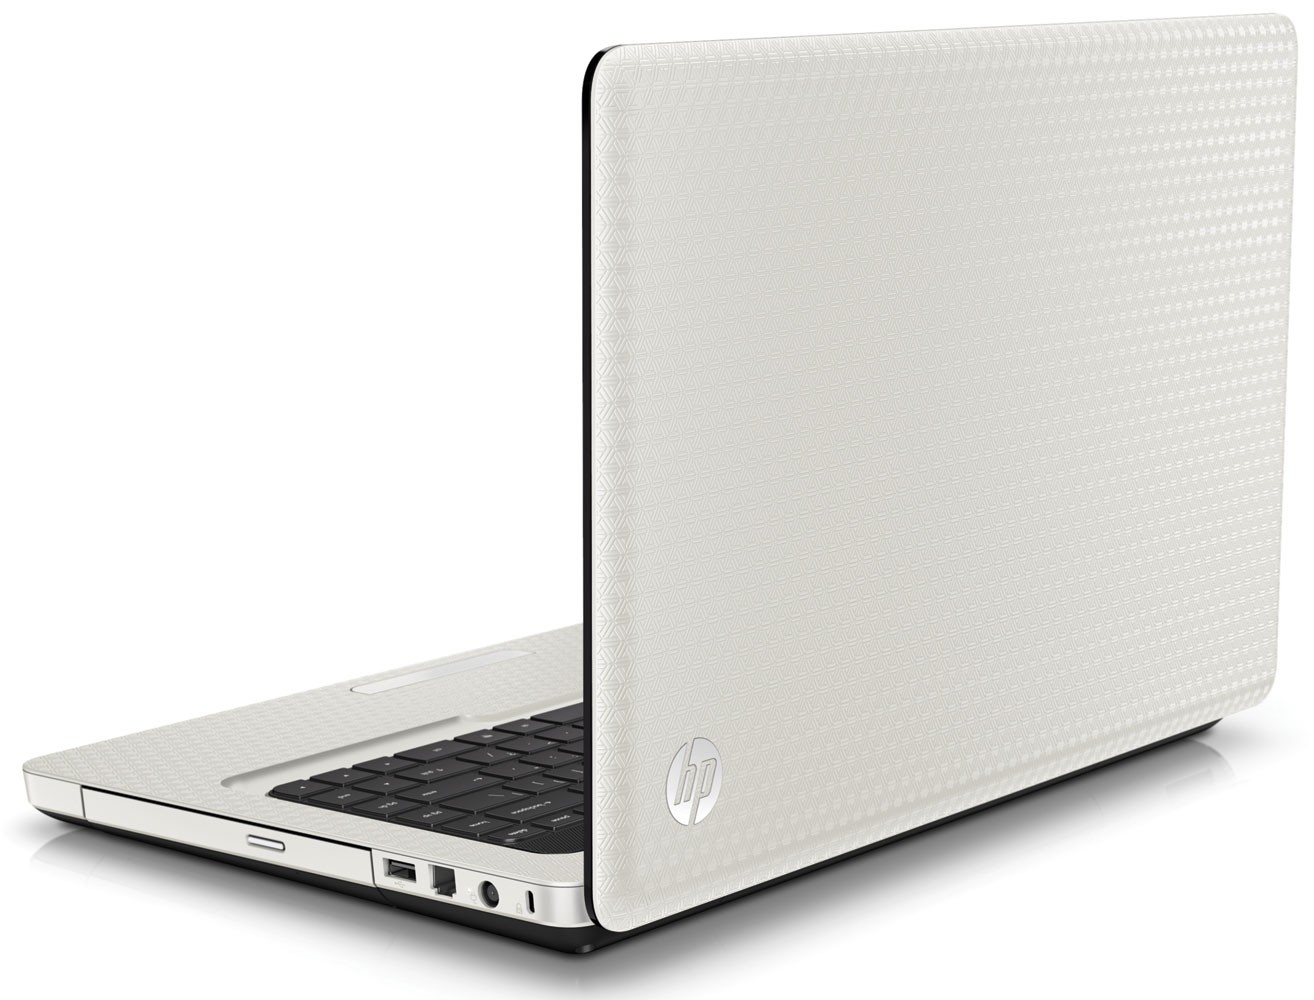 Ноутбук Hp G62 Цена И Характеристика